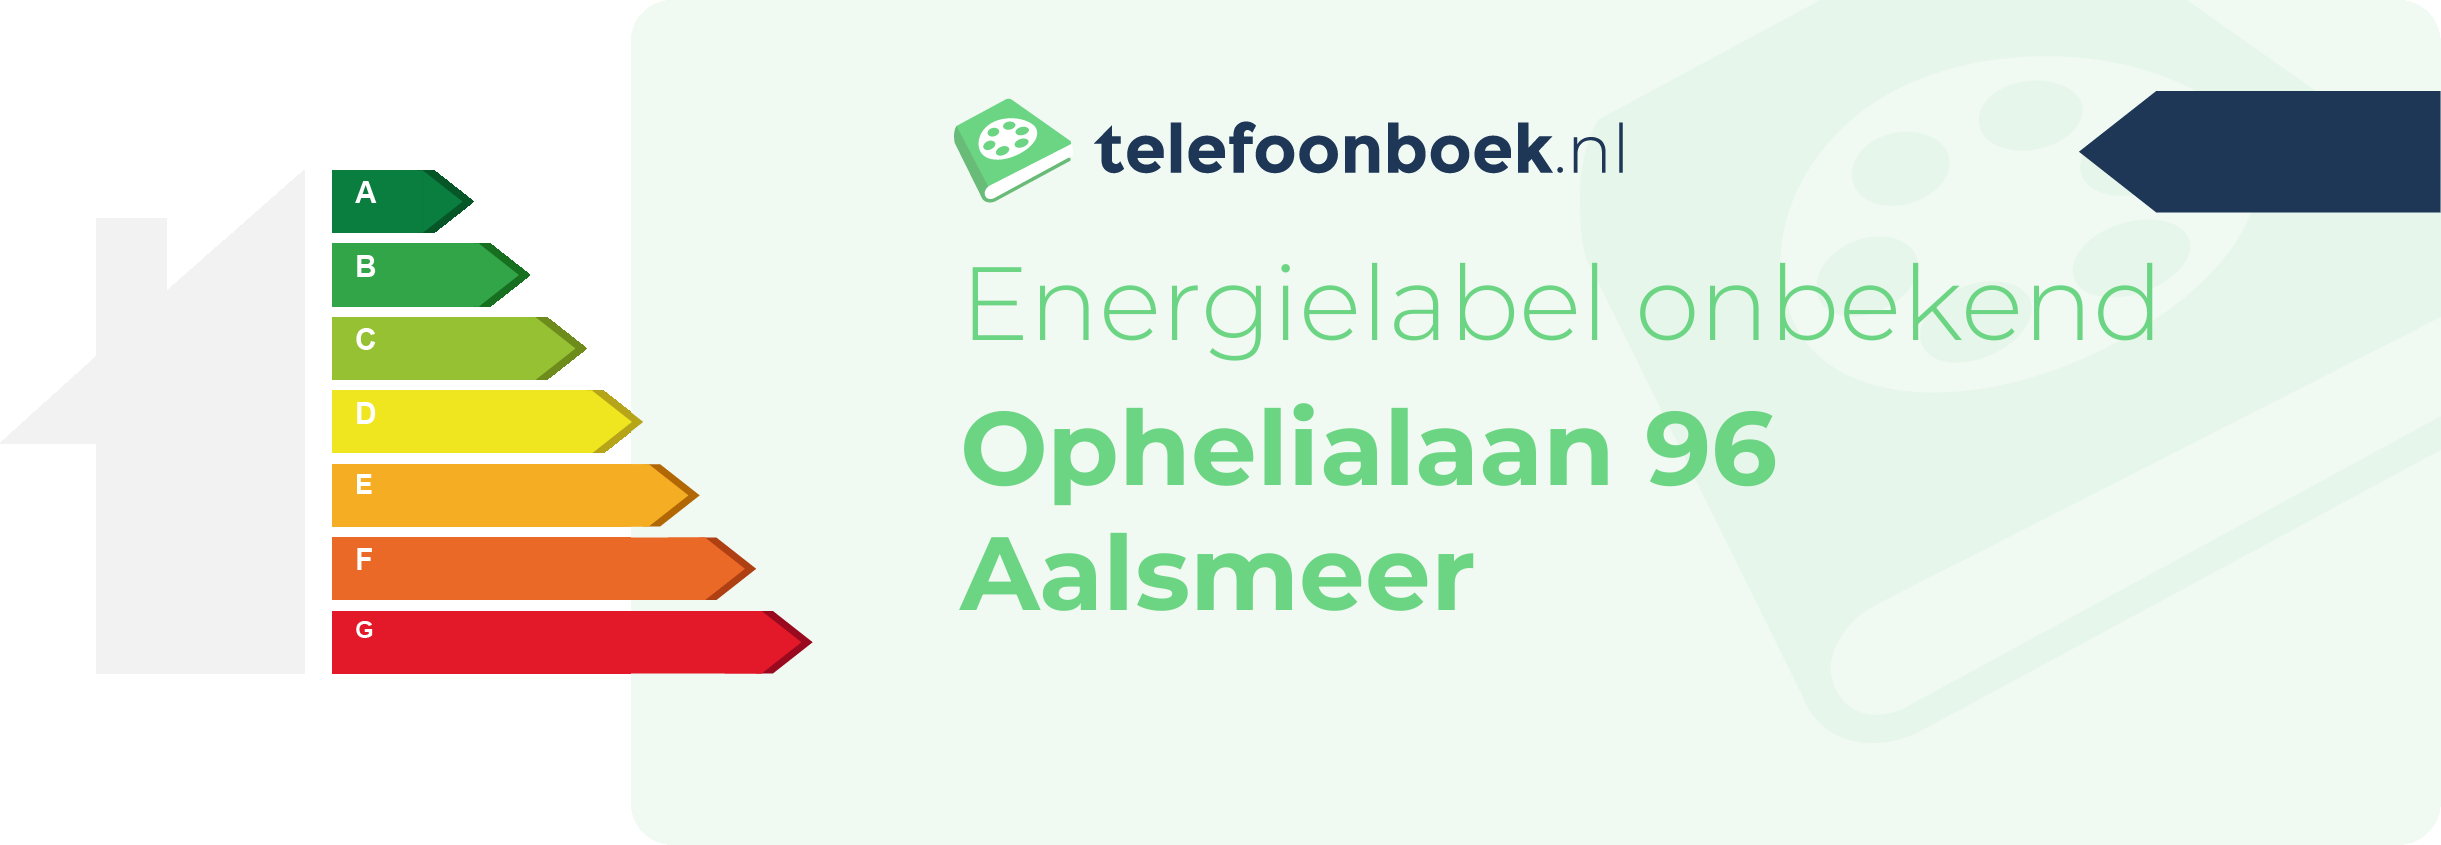 Energielabel Ophelialaan 96 Aalsmeer